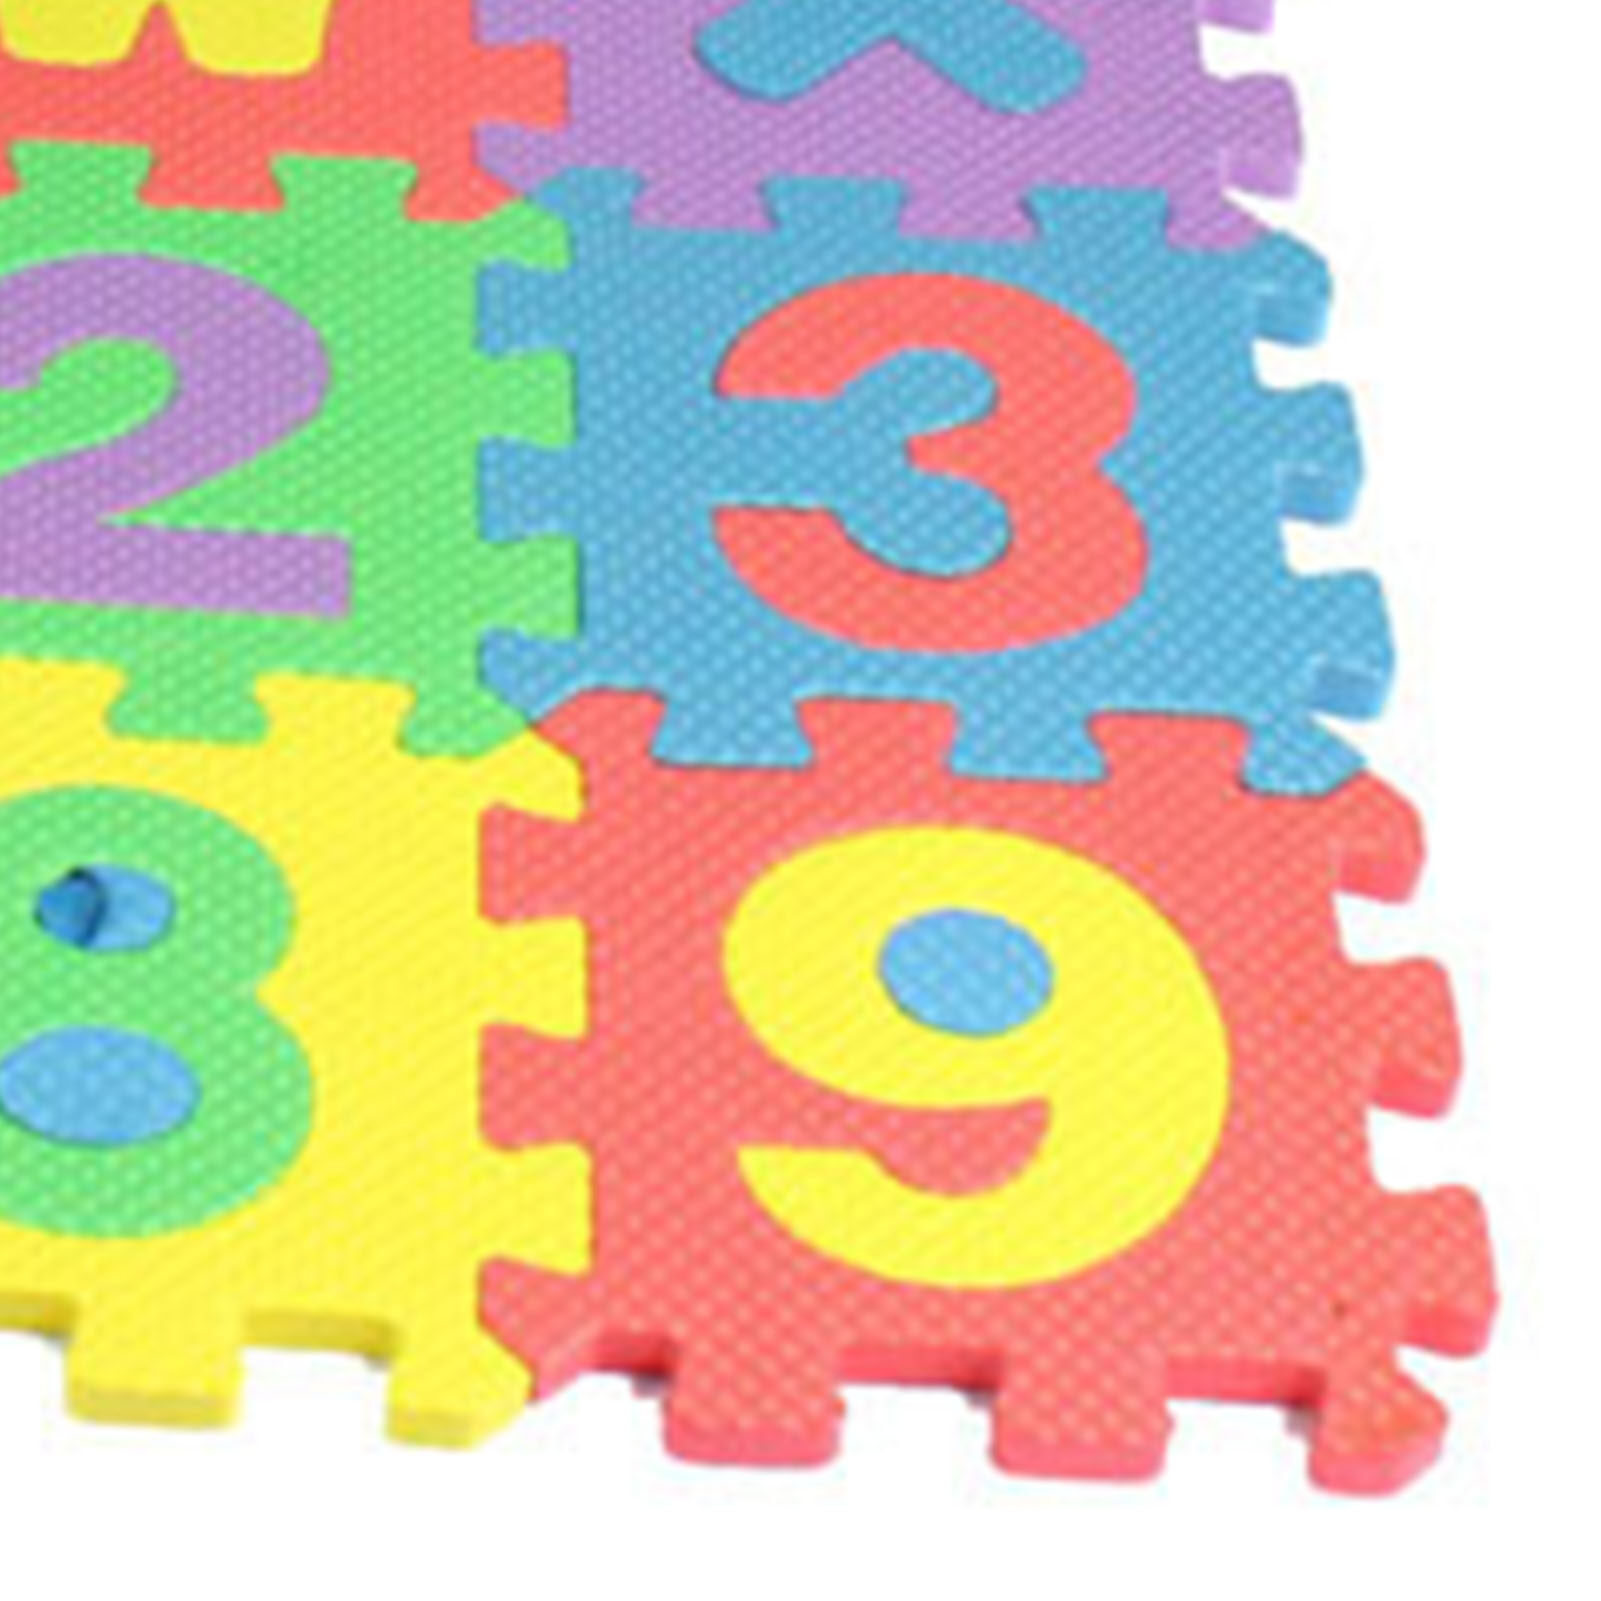 ABC Alphabet Foam Mat Educational Alphabet Foam Puzzle Play Mat Multicolor